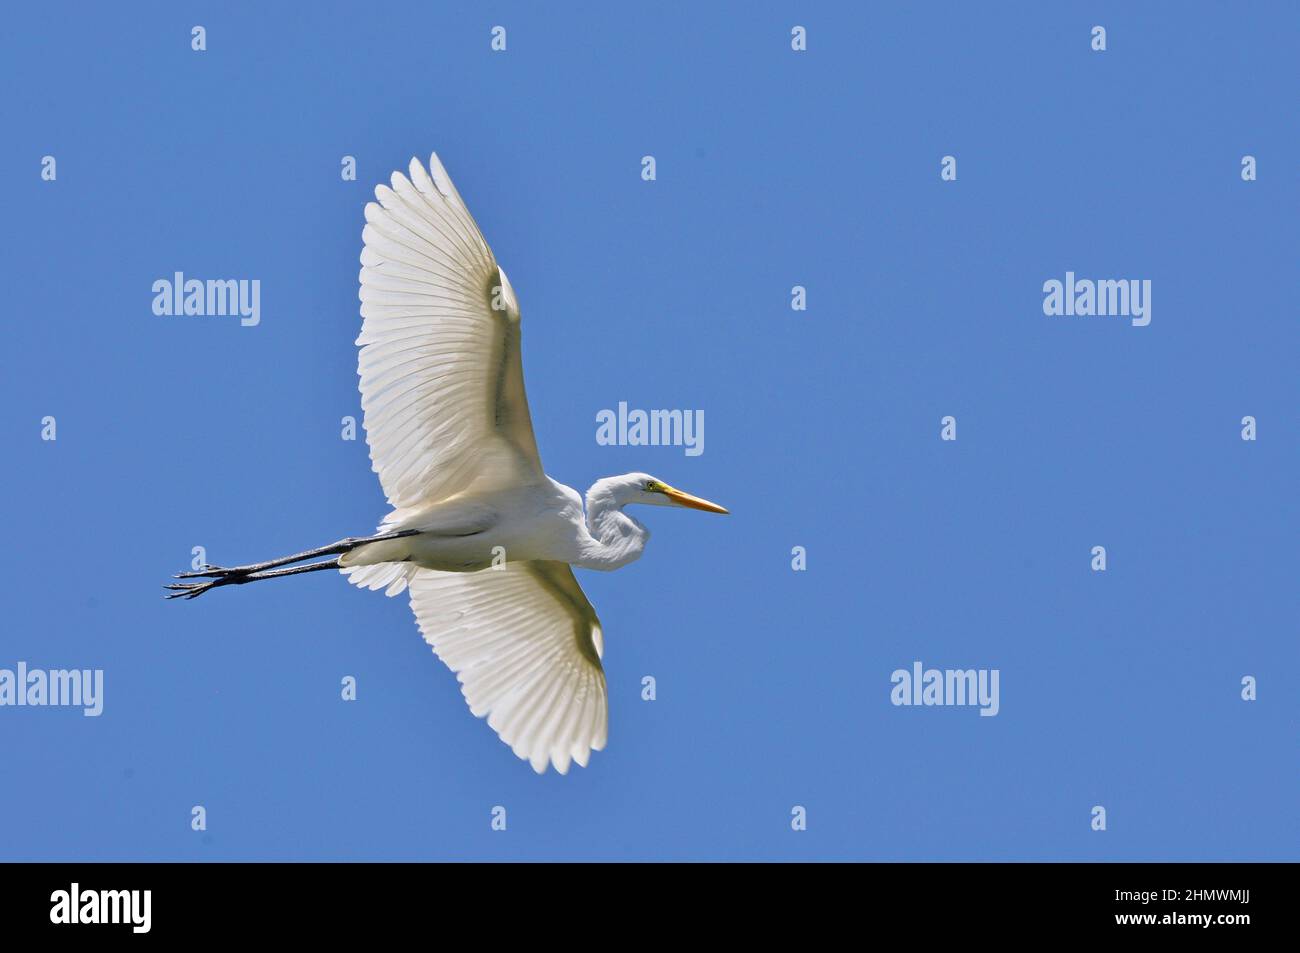 Silberreiher (Ardea alba) fliegen gegen den blauen Himmel mit ausgestreckten Flügeln und geraden Beinen. Aufgenommen auf der Río Paraná de las Palmas, Buenos Aires, Argentinien Stockfoto